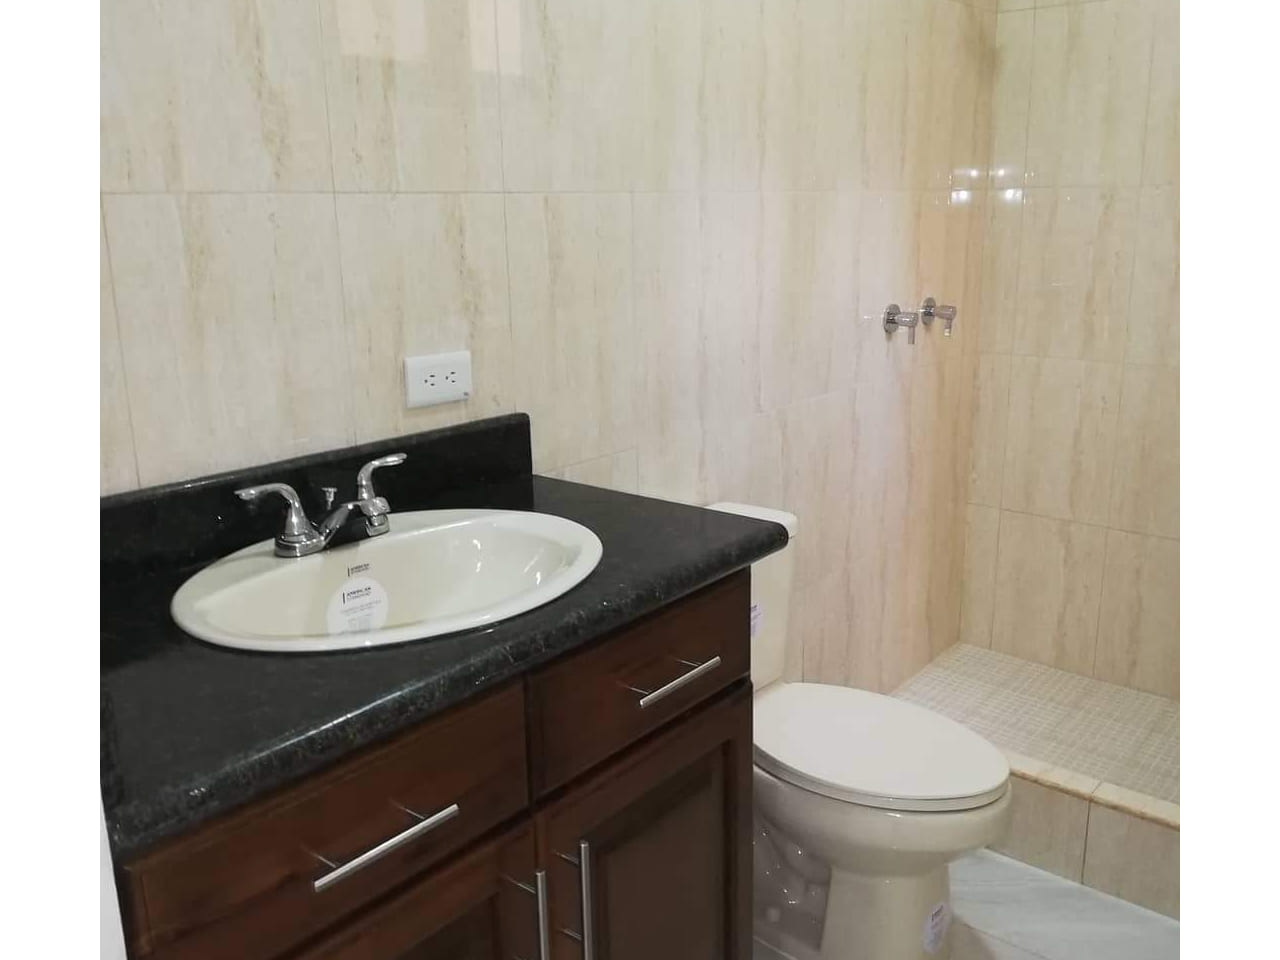 Baño con mueble color café oscuro, plancha color negro en lavamanos junto a inodoro con cerámica en la pared de color blanco.